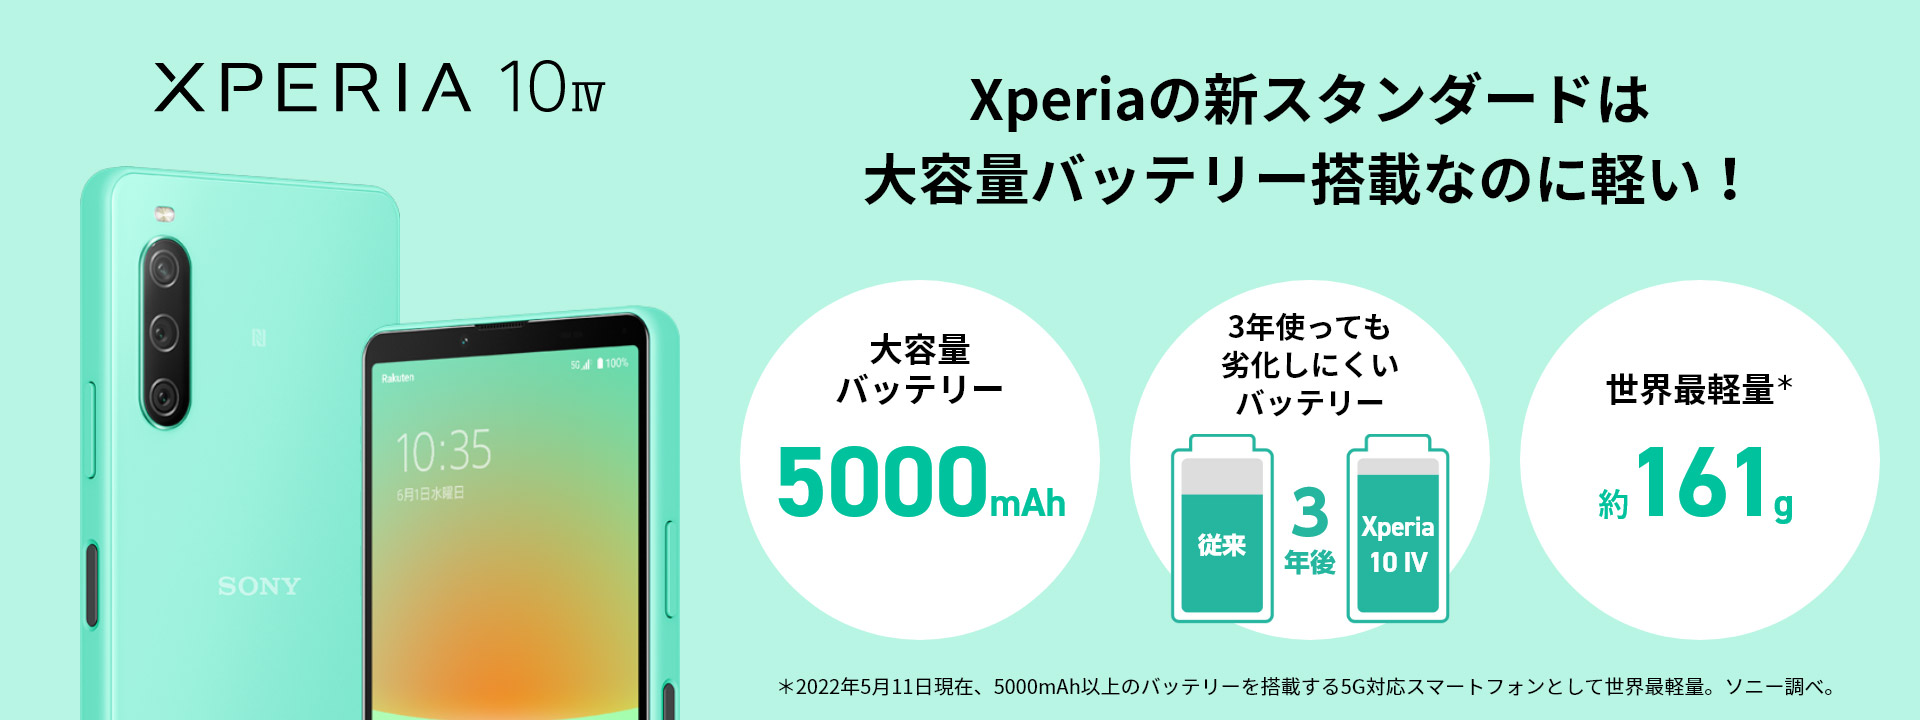 スマートフォン/携帯電話 スマートフォン本体 Rakuten Mobile Xperia 10 IV発売記念 | Xperia（エクスペリア）公式サイト